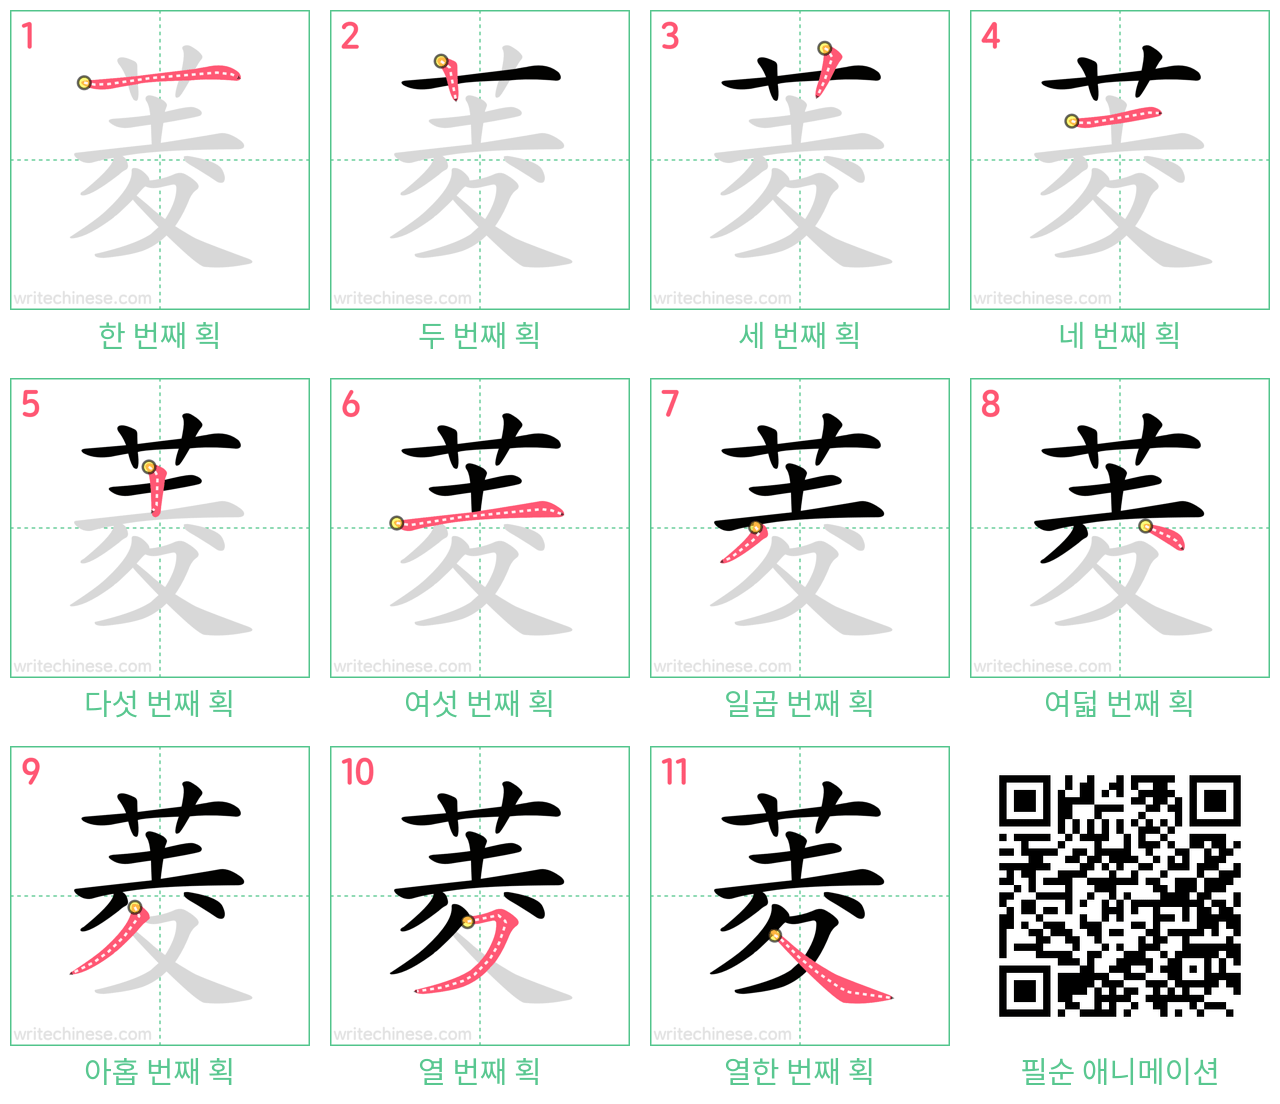 菱 step-by-step stroke order diagrams